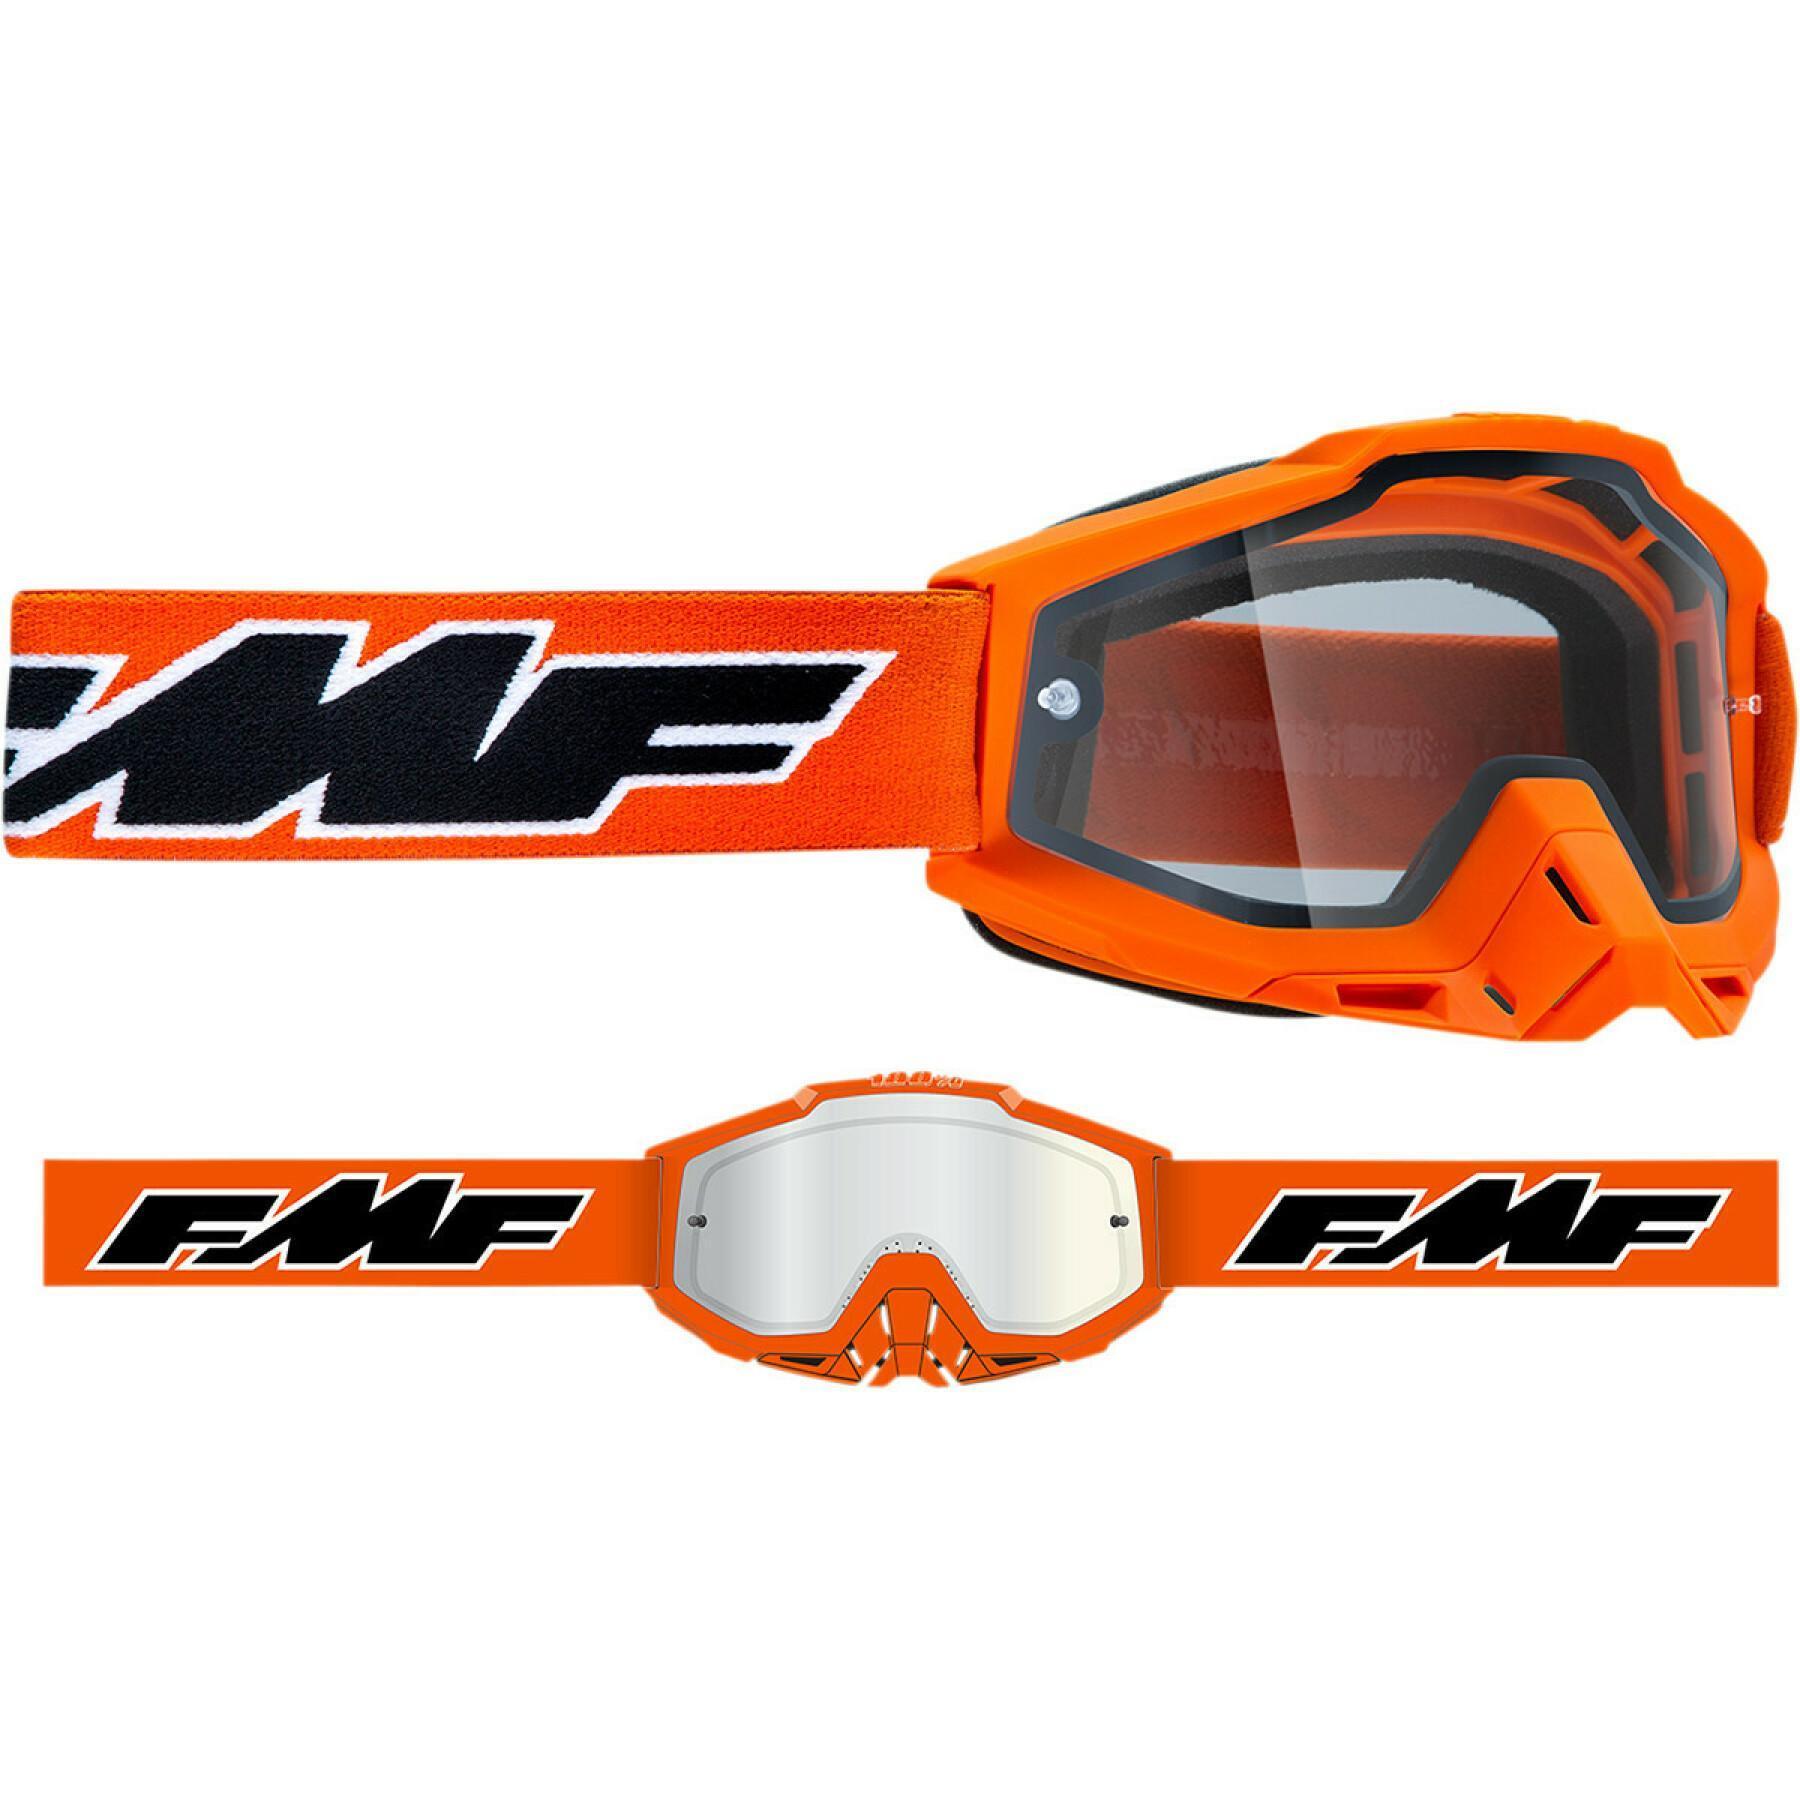 Gafas de moto  FMF Vision endr rocket